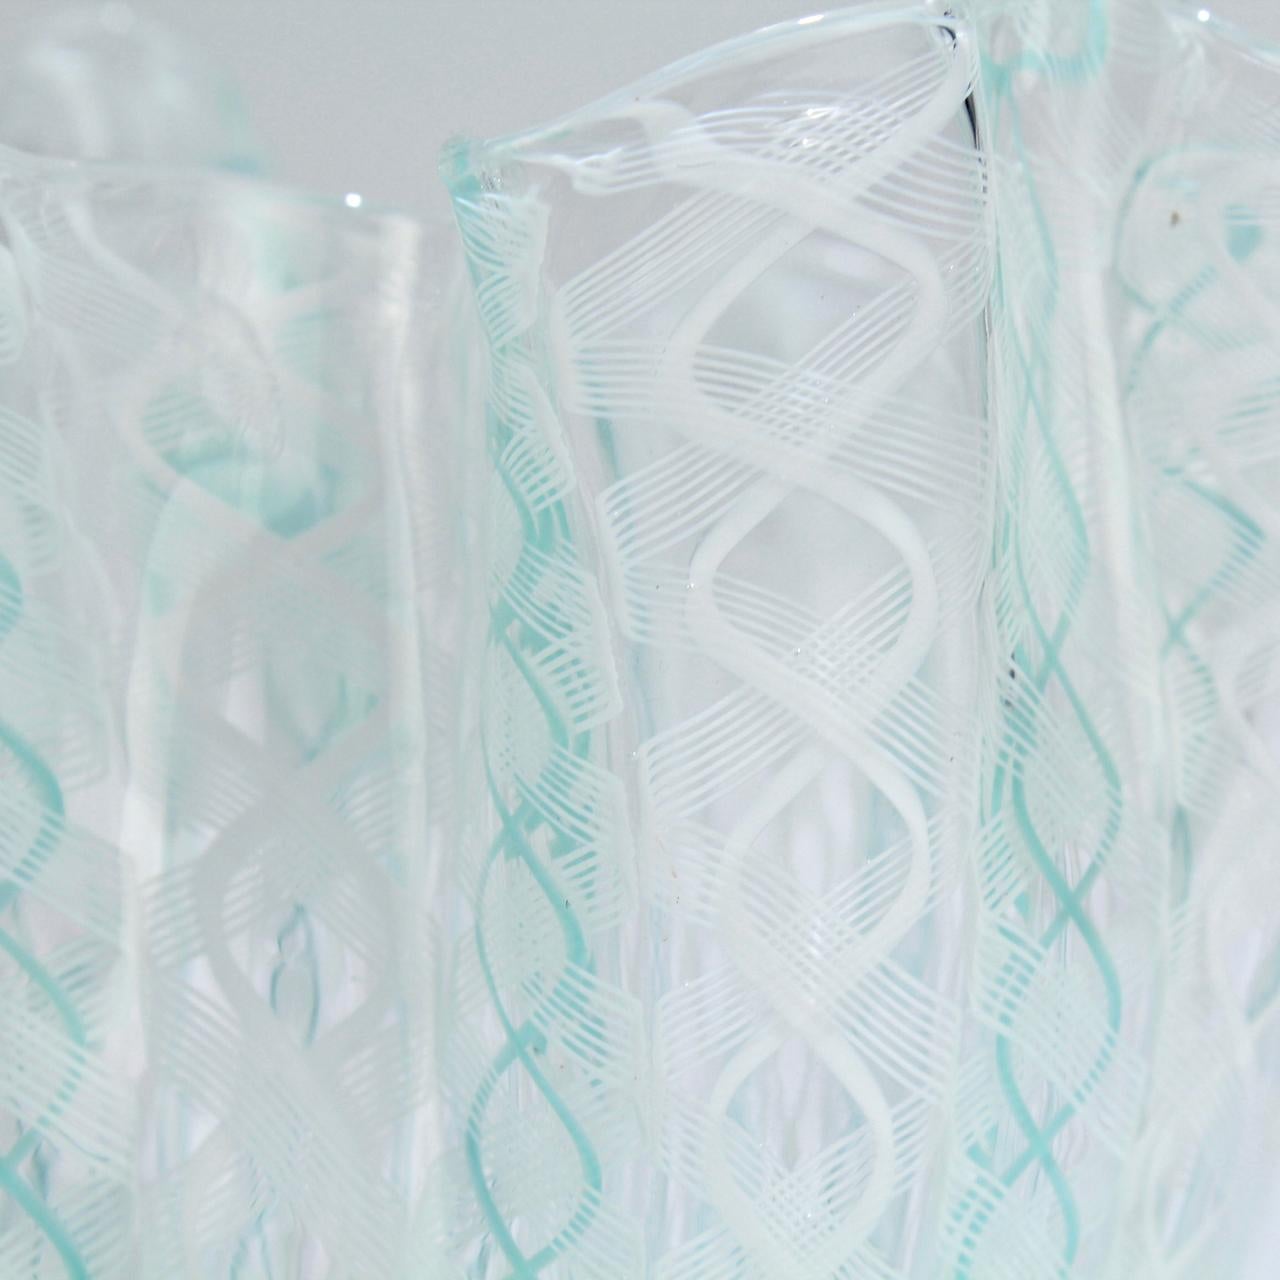 Murano Glass Fazzoletto Handkerchief Vase by Fulvio Bianconi & Paolo Venini for Venini Glass